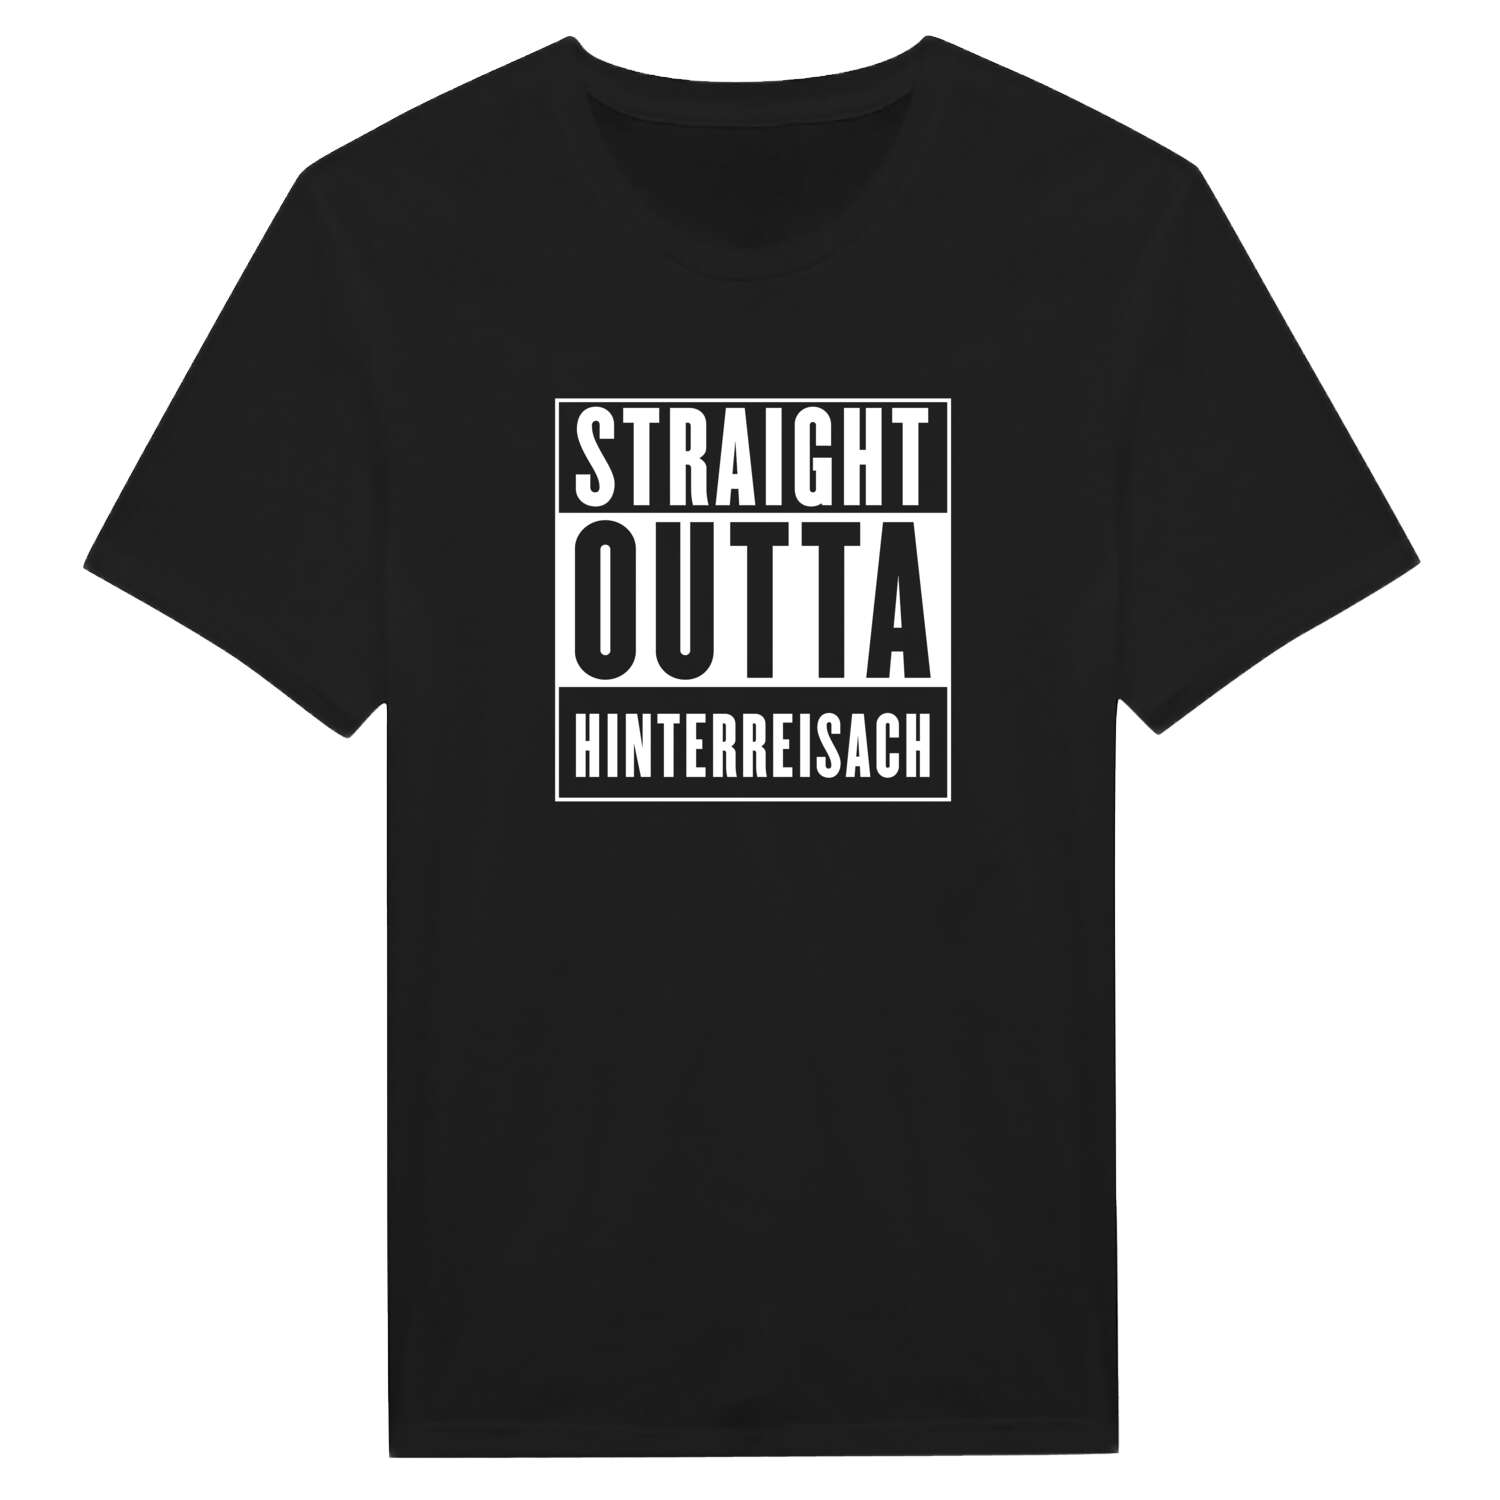 Hinterreisach T-Shirt »Straight Outta«